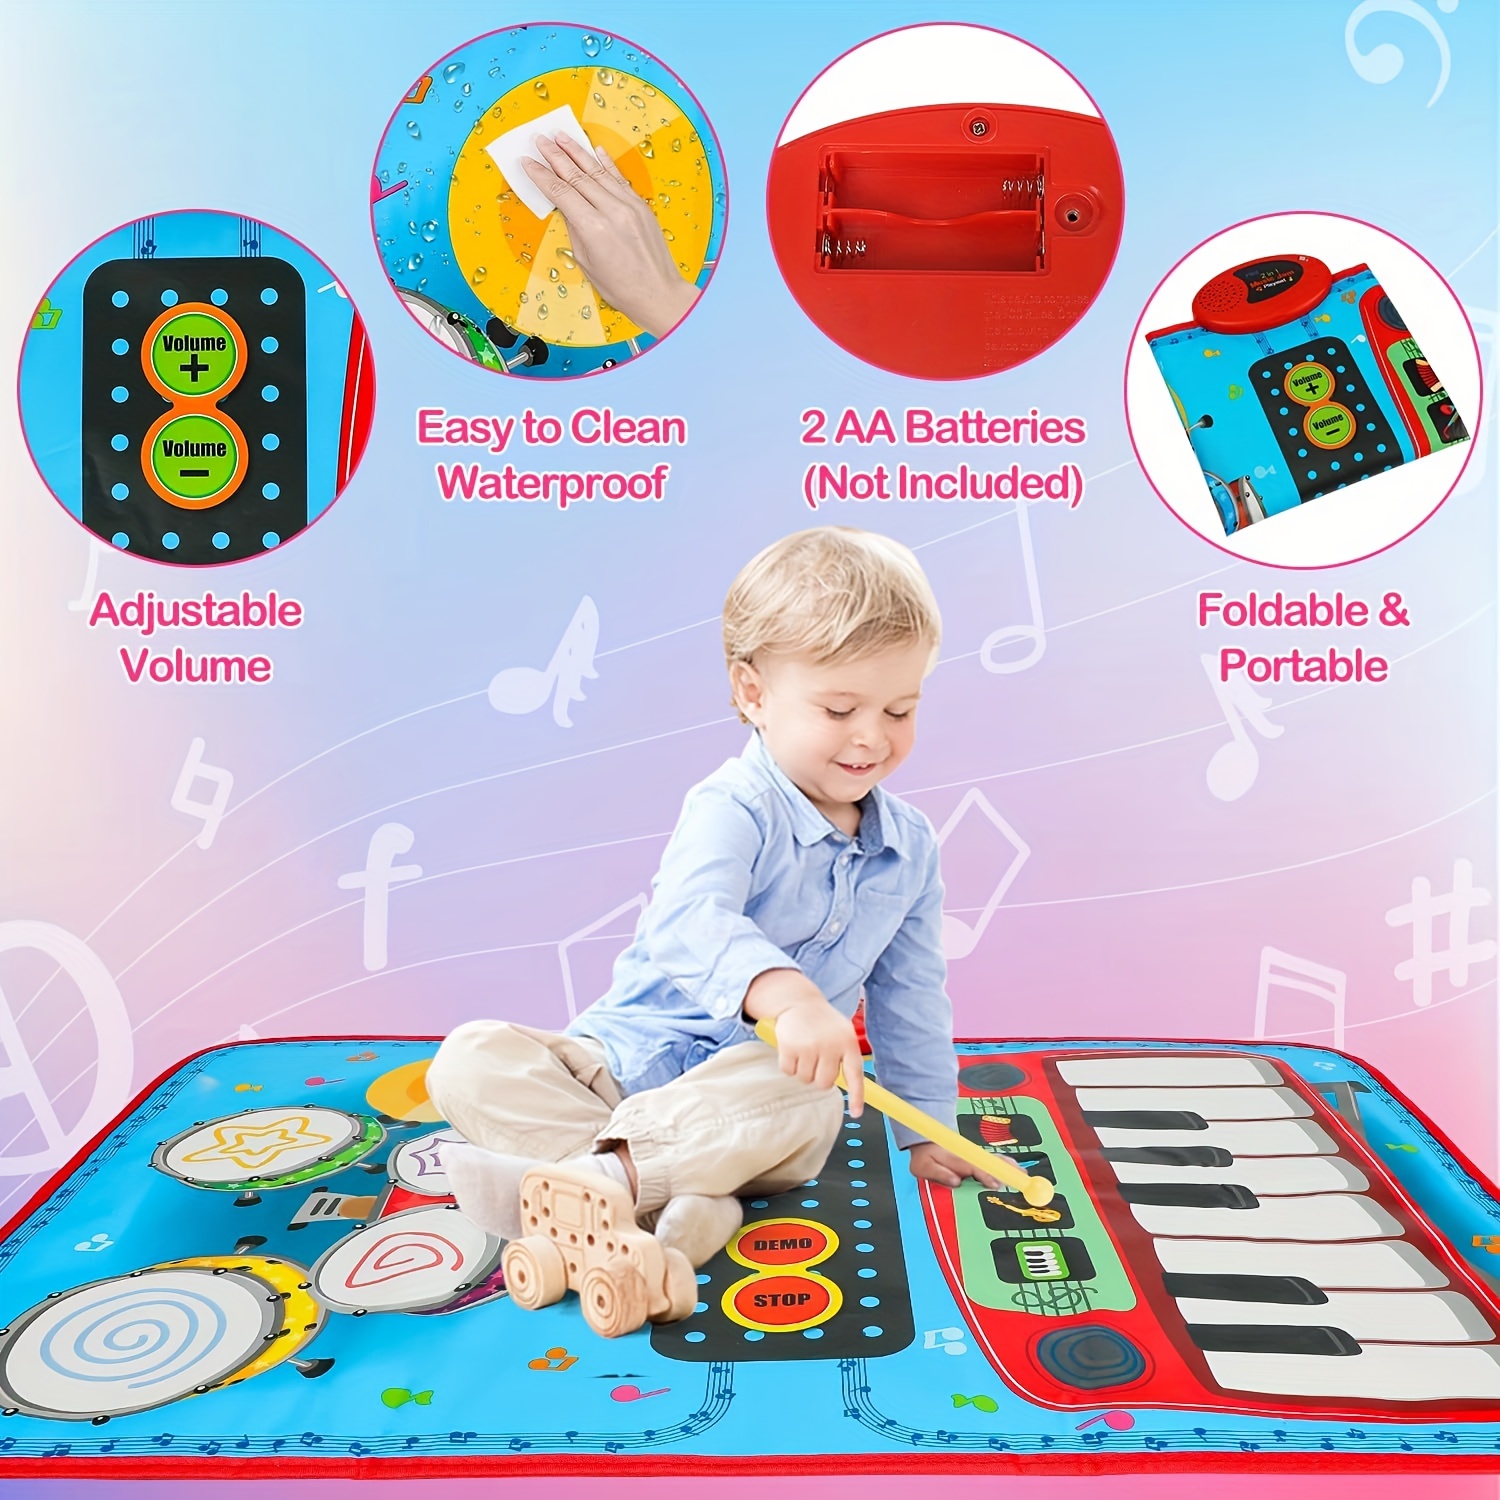 Mini Piano Infantil Animais Hipopótamo Cute Toys - Pedagógica - Papelaria,  Livraria, Artesanato, Festa e Fantasia